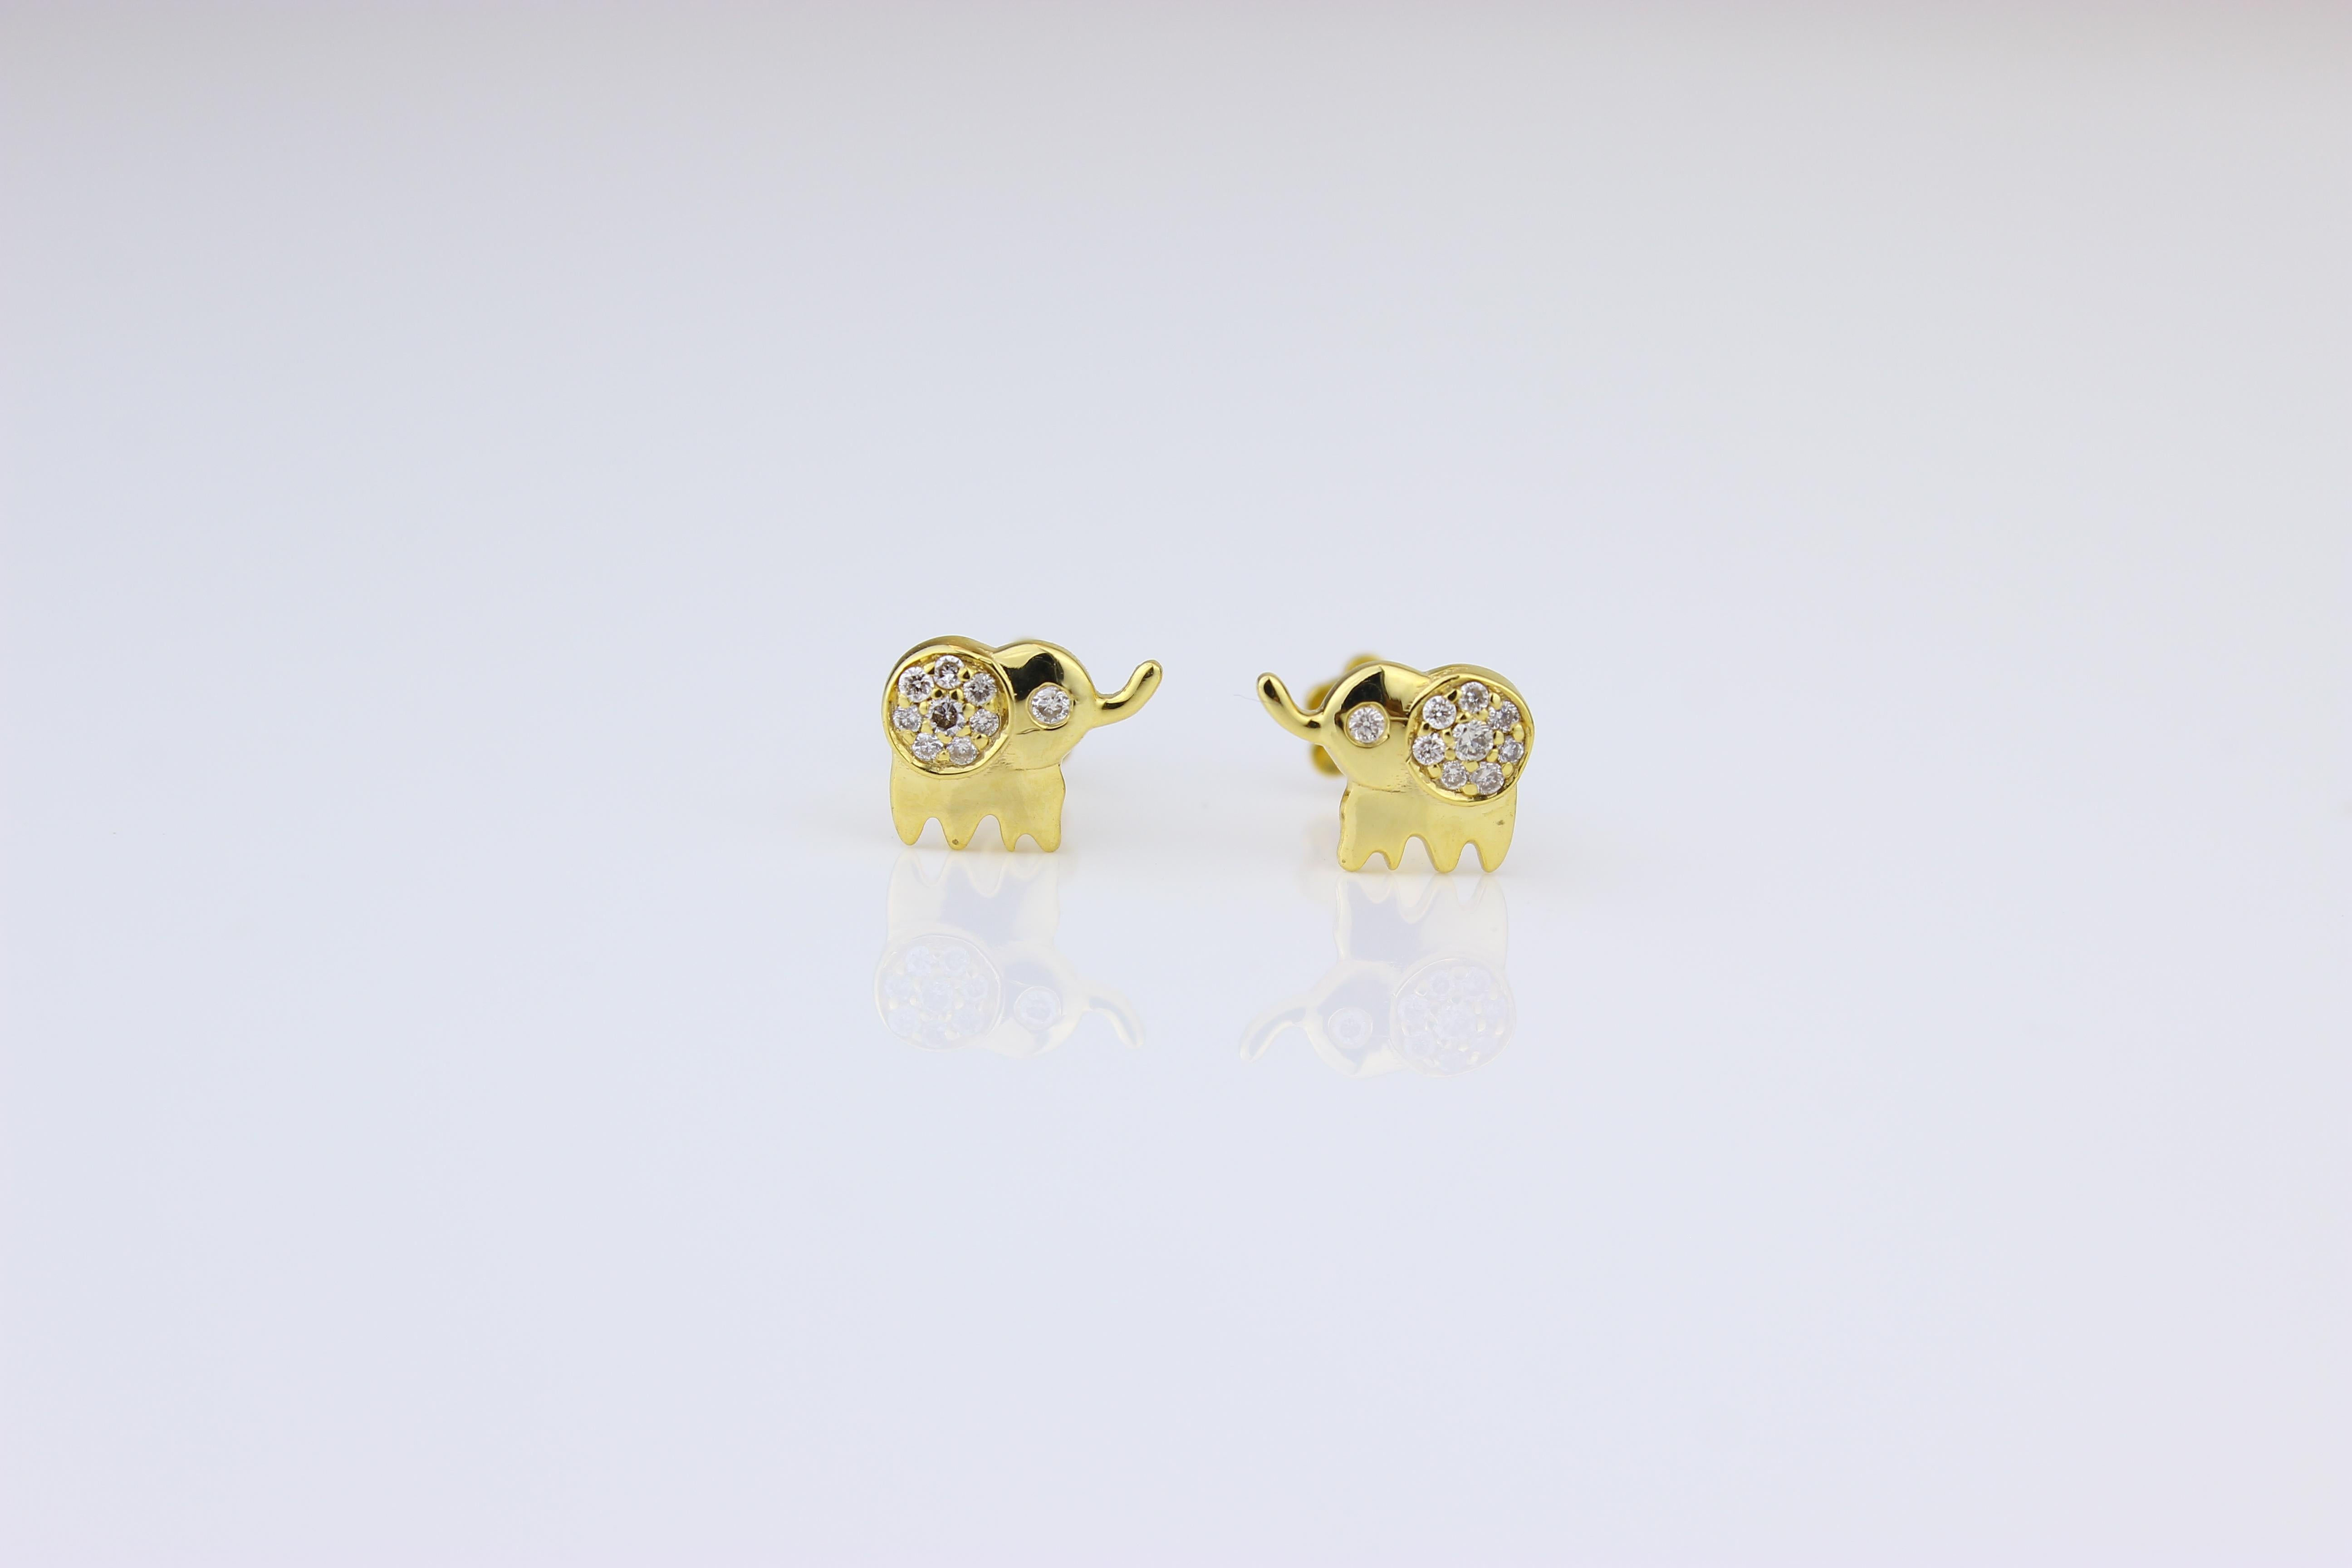 Adorables boucles d'oreilles en diamant éléphant, conçues spécialement pour les filles (enfants/tout-petits), fabriquées en or massif 18 carats de haute qualité. Ces charmantes boucles d'oreilles sont ornées de délicats diamants, ajoutant une touche